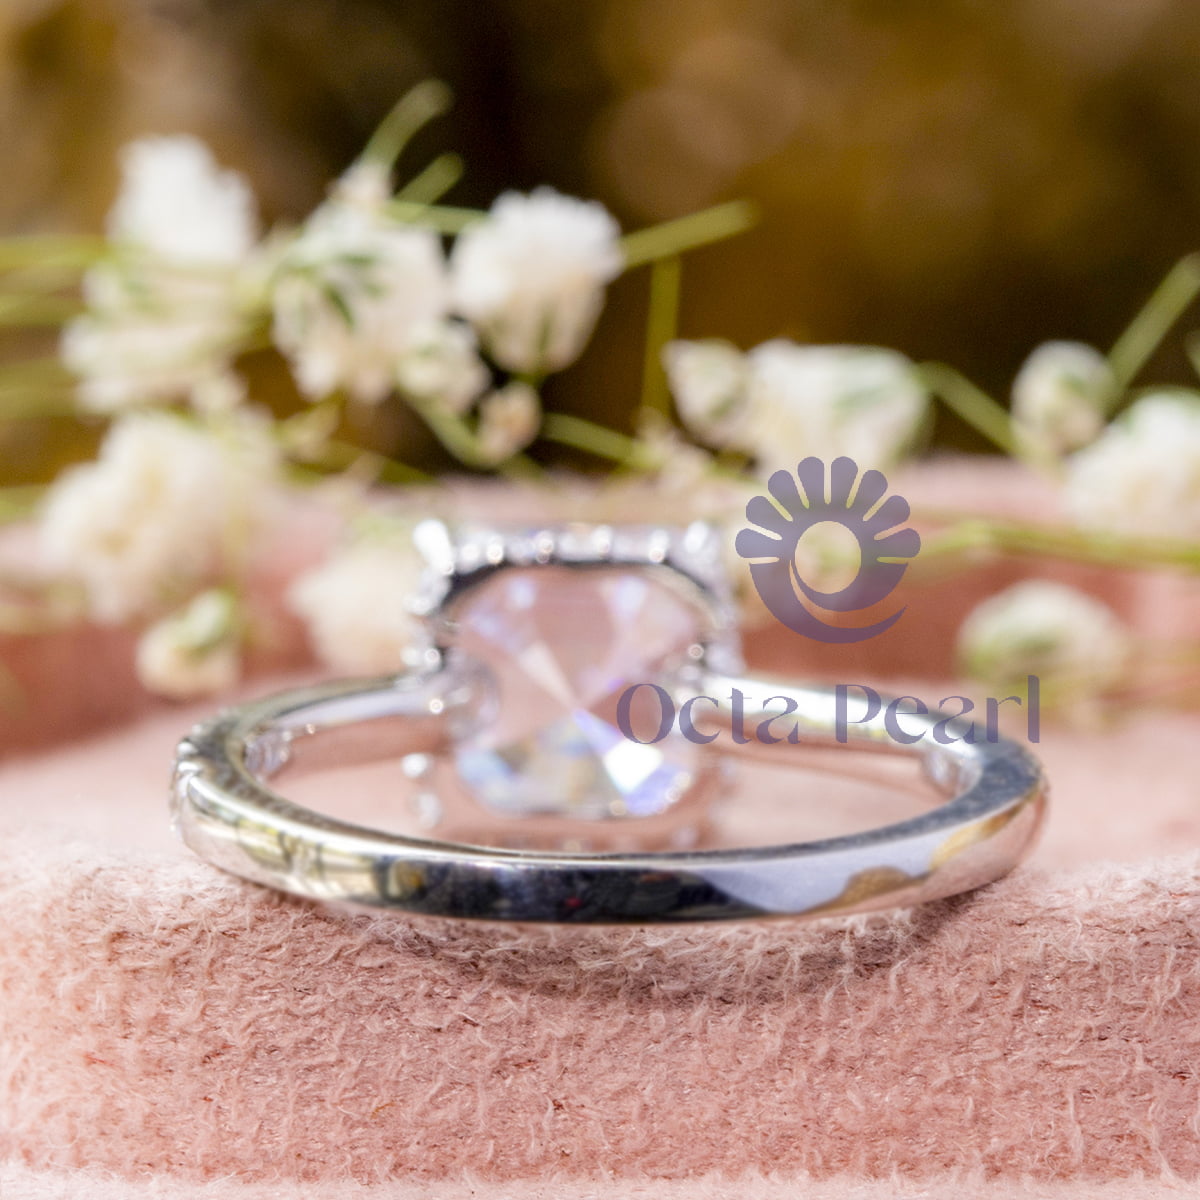 Asscher-Cut Hidden Halo Wedding Ring